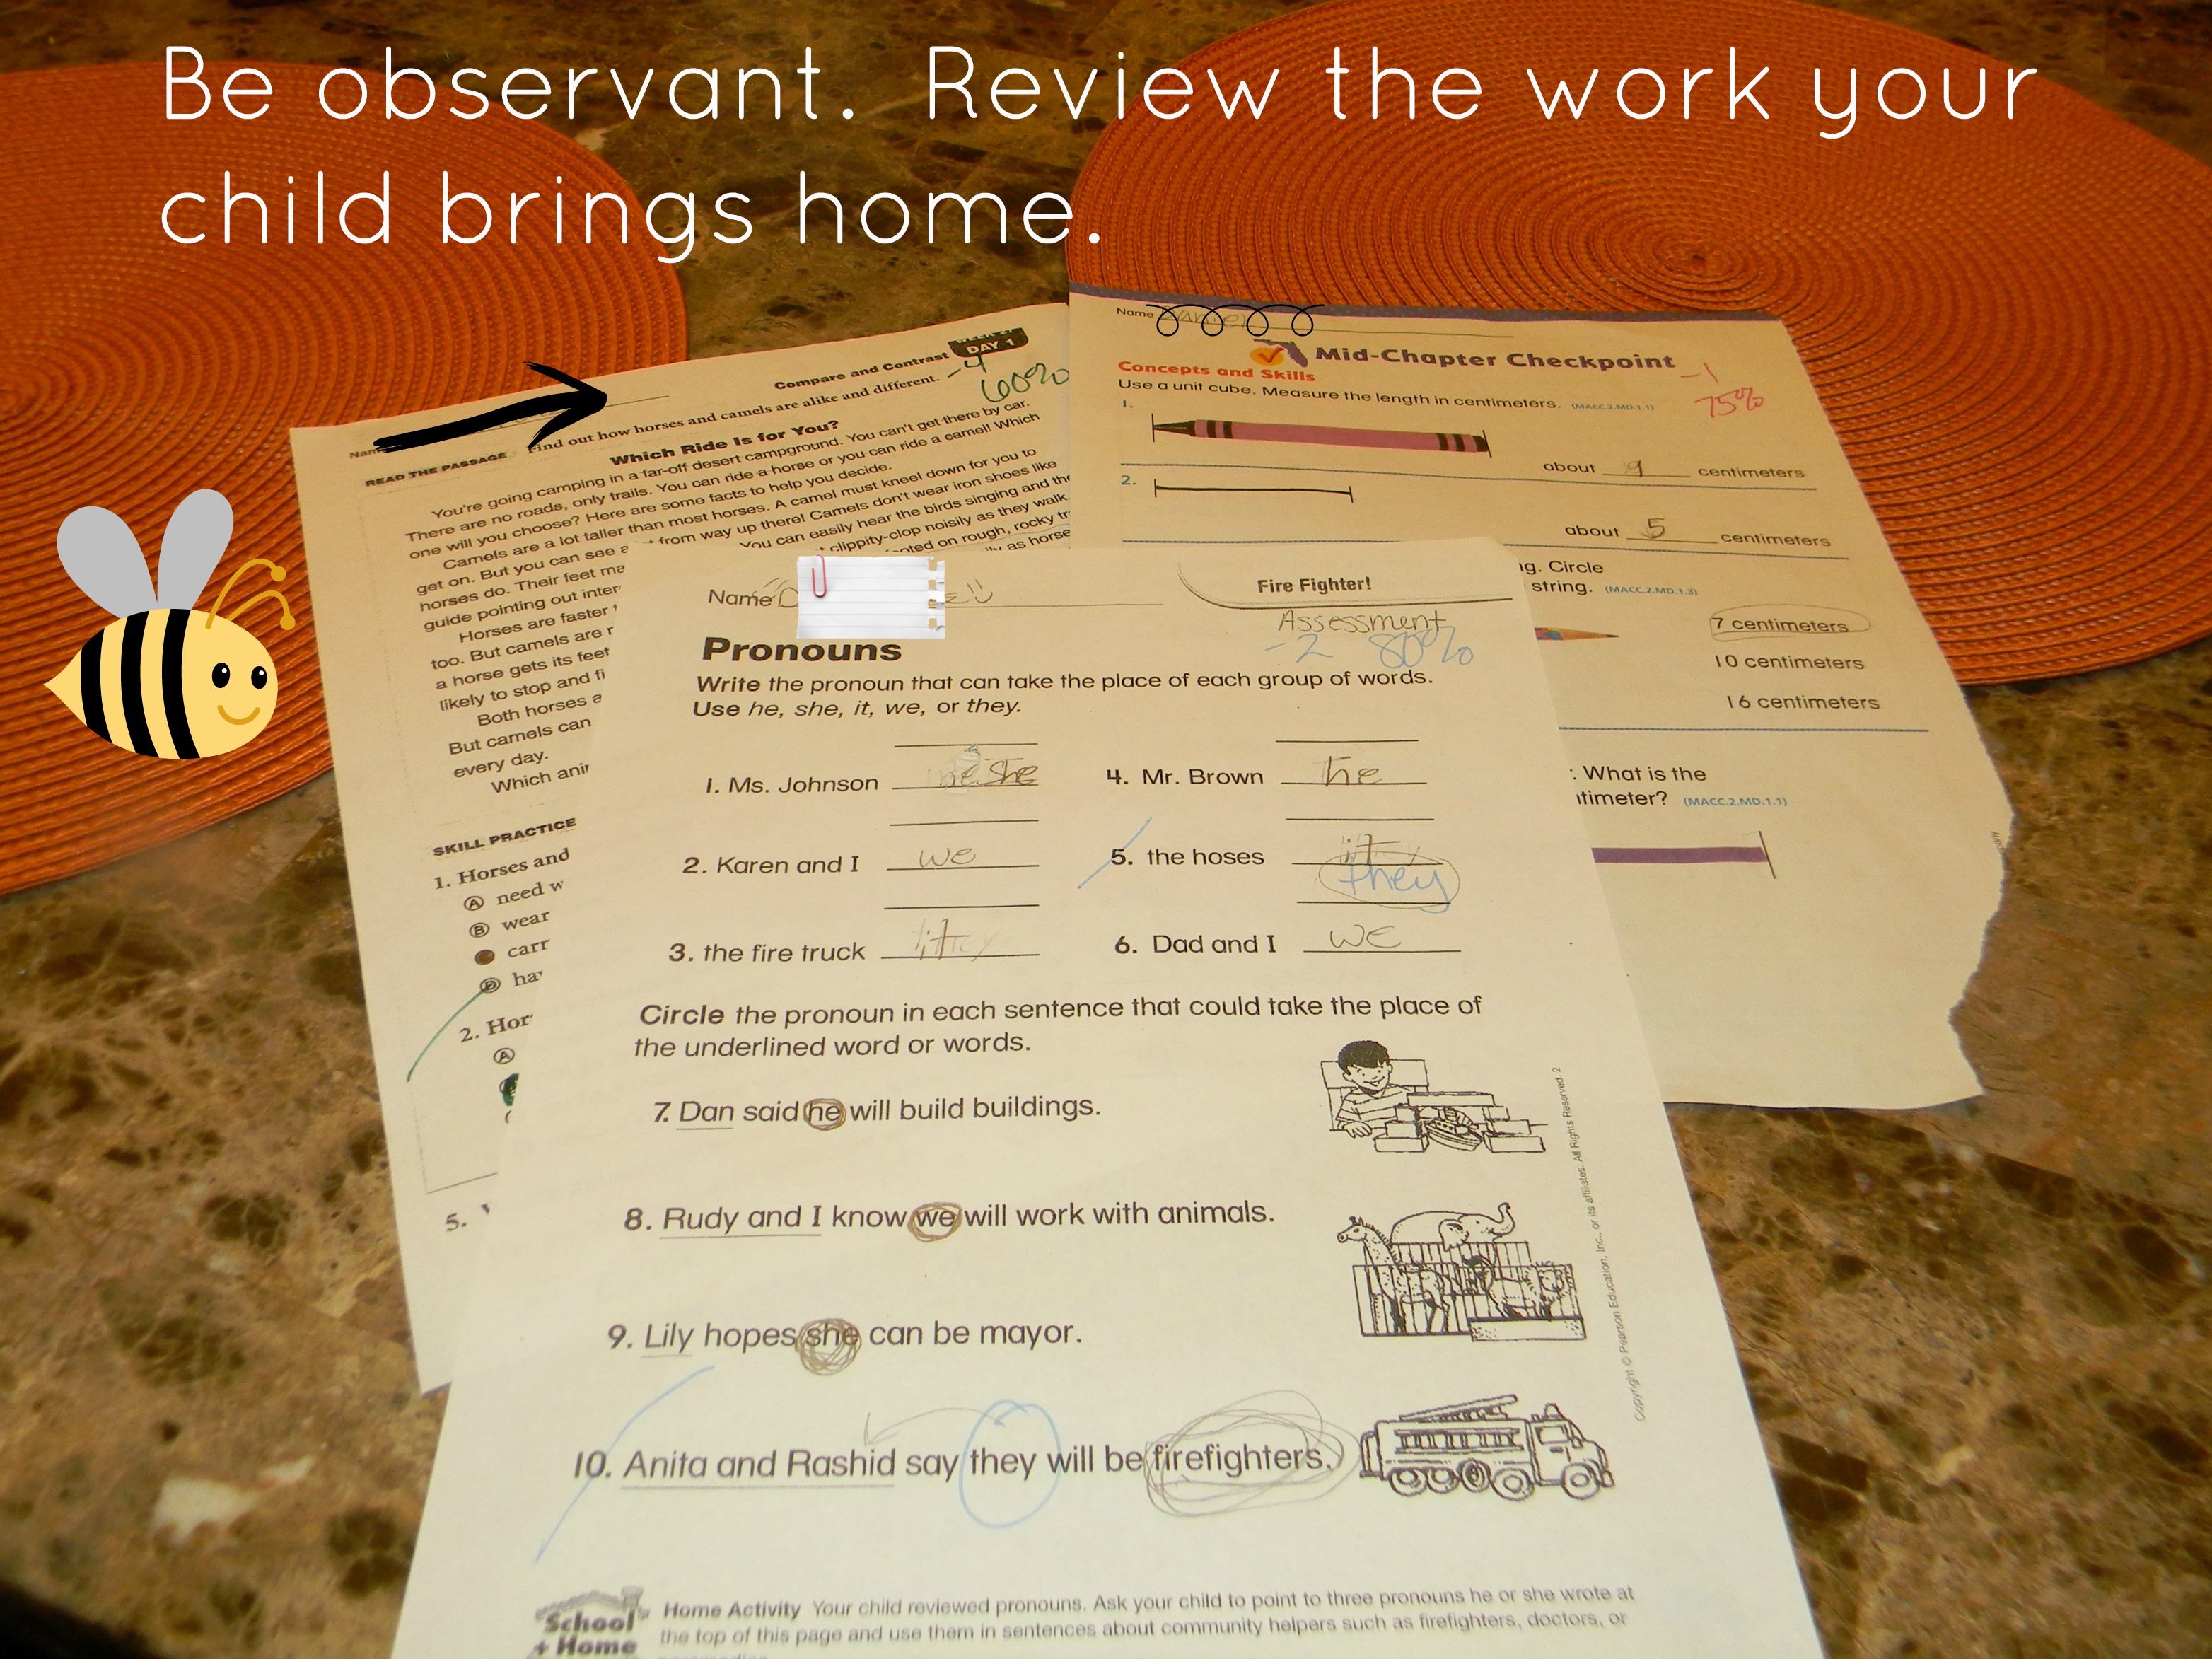 Help In Homework Reviews - 26 Reviews of blogger.com | Sitejabber